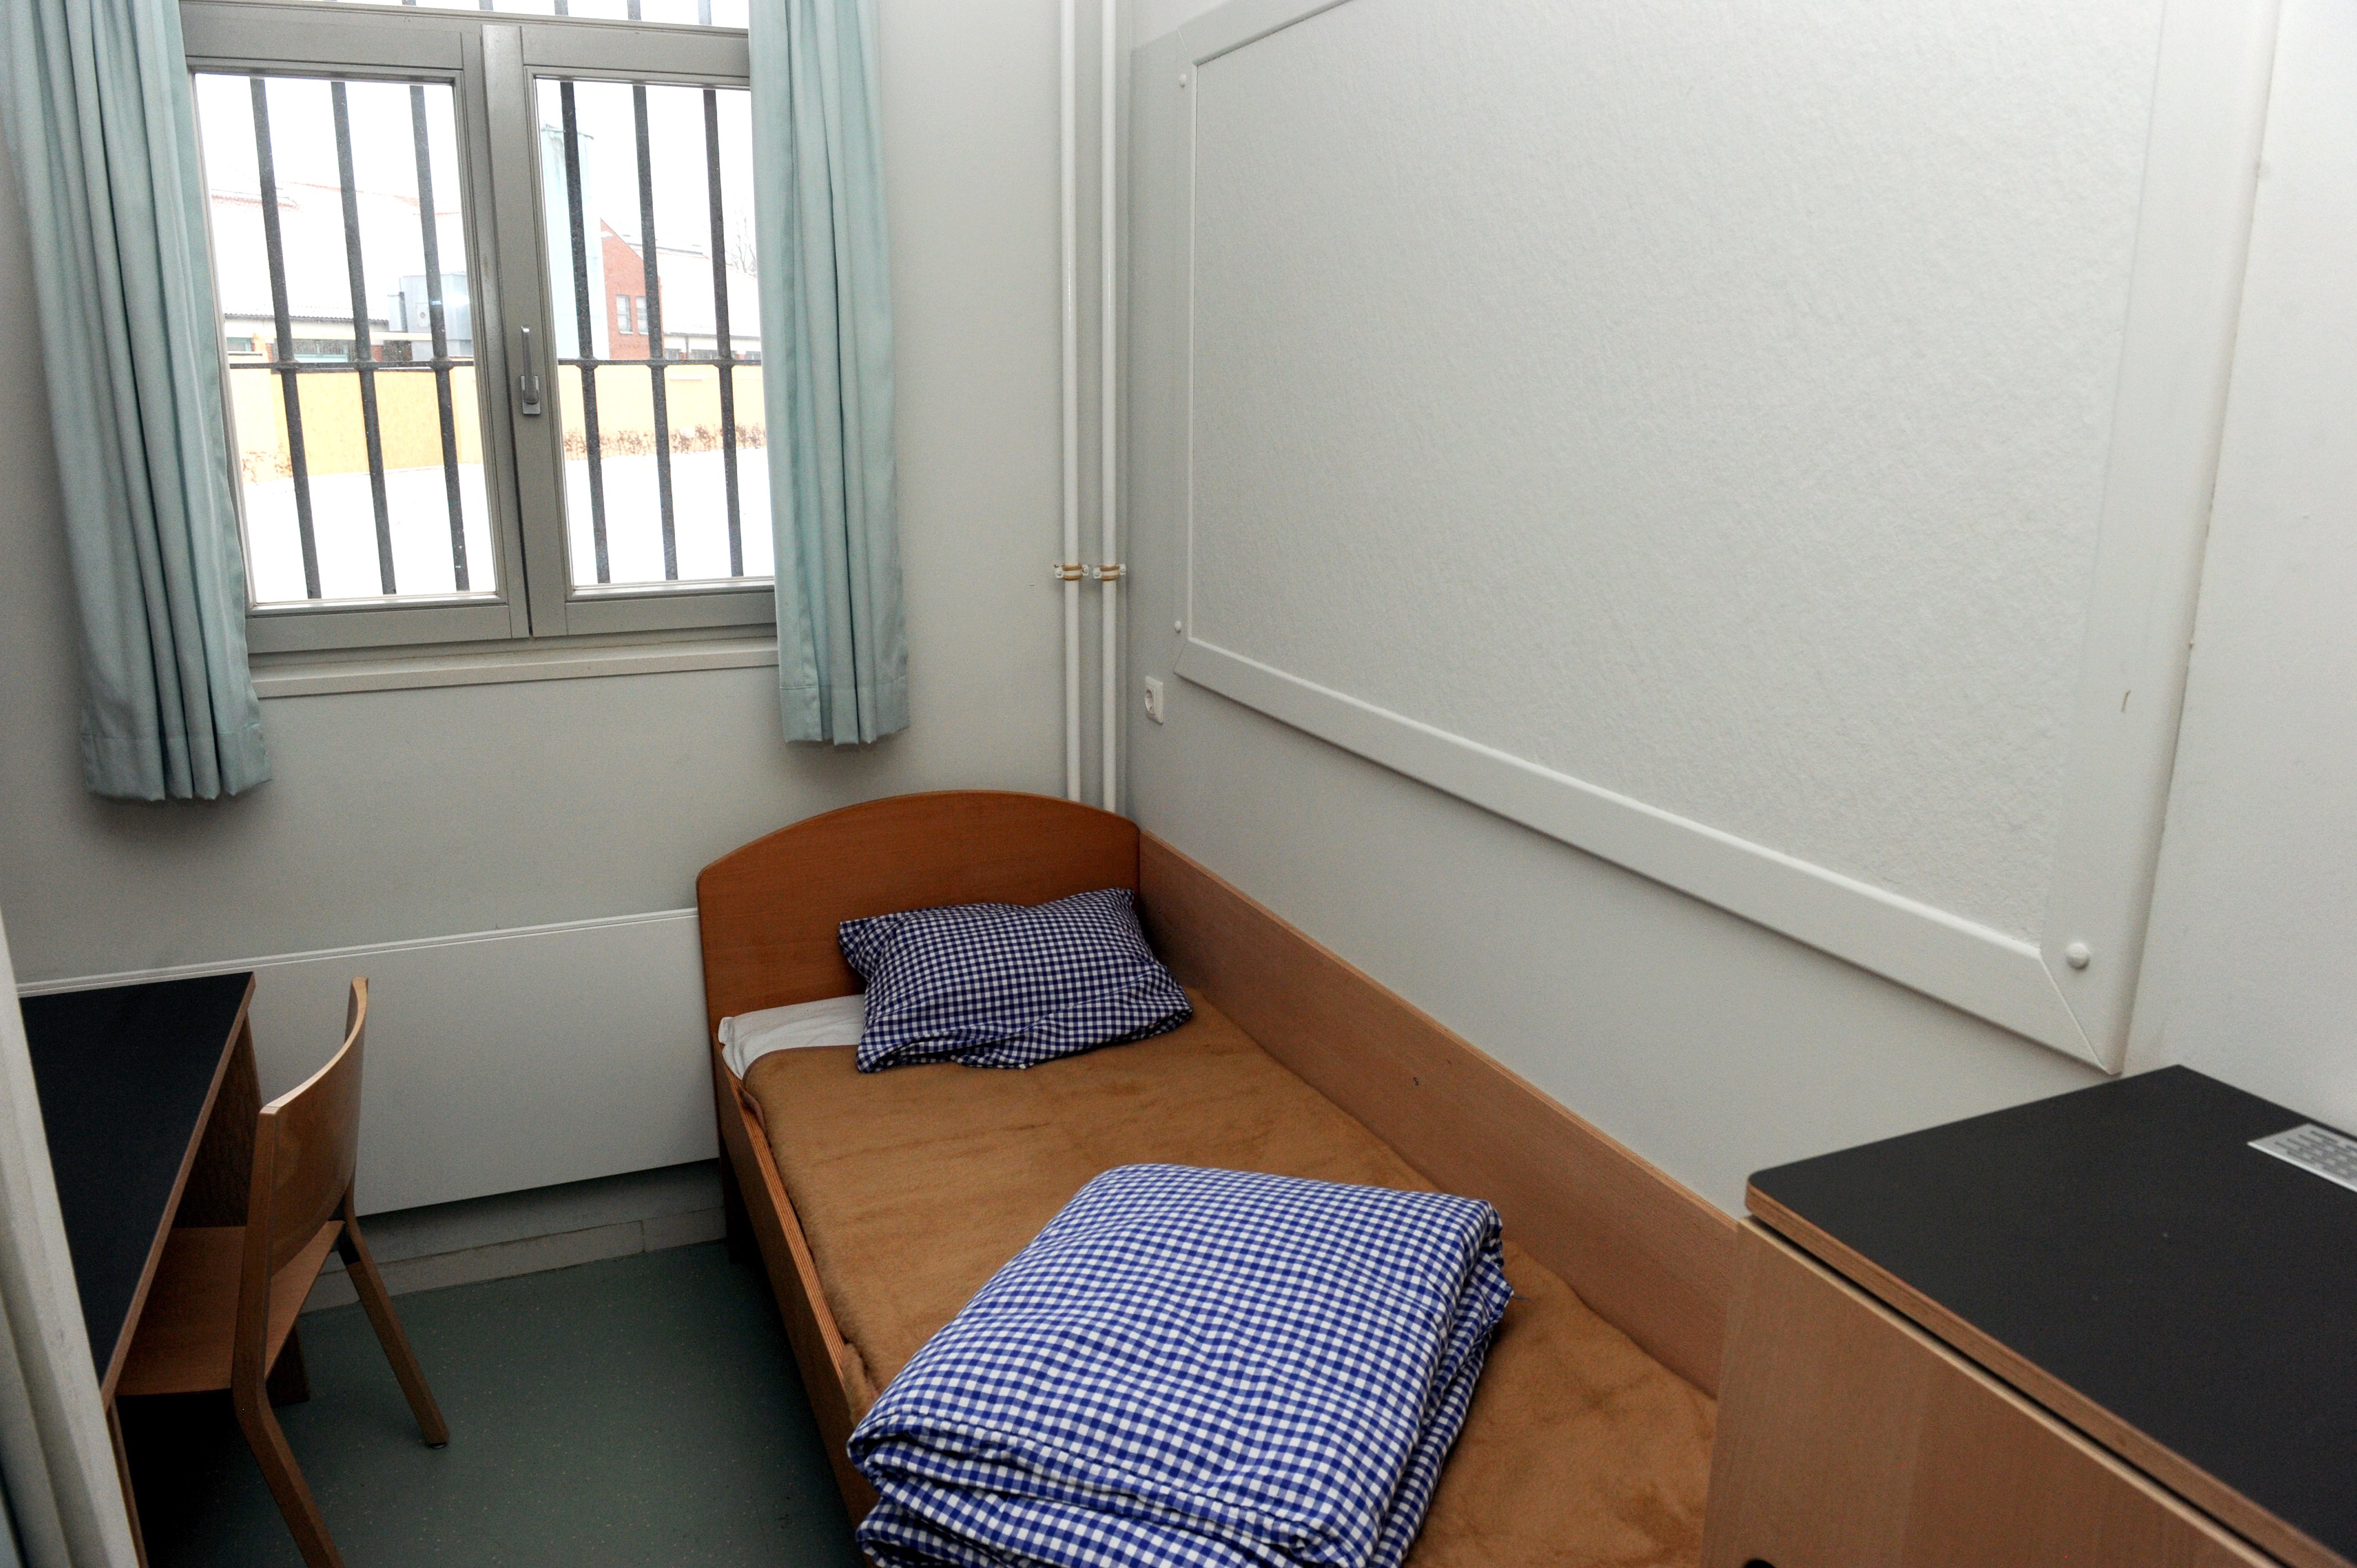 Les condicions de Puigdemont a la presó de Neumünster